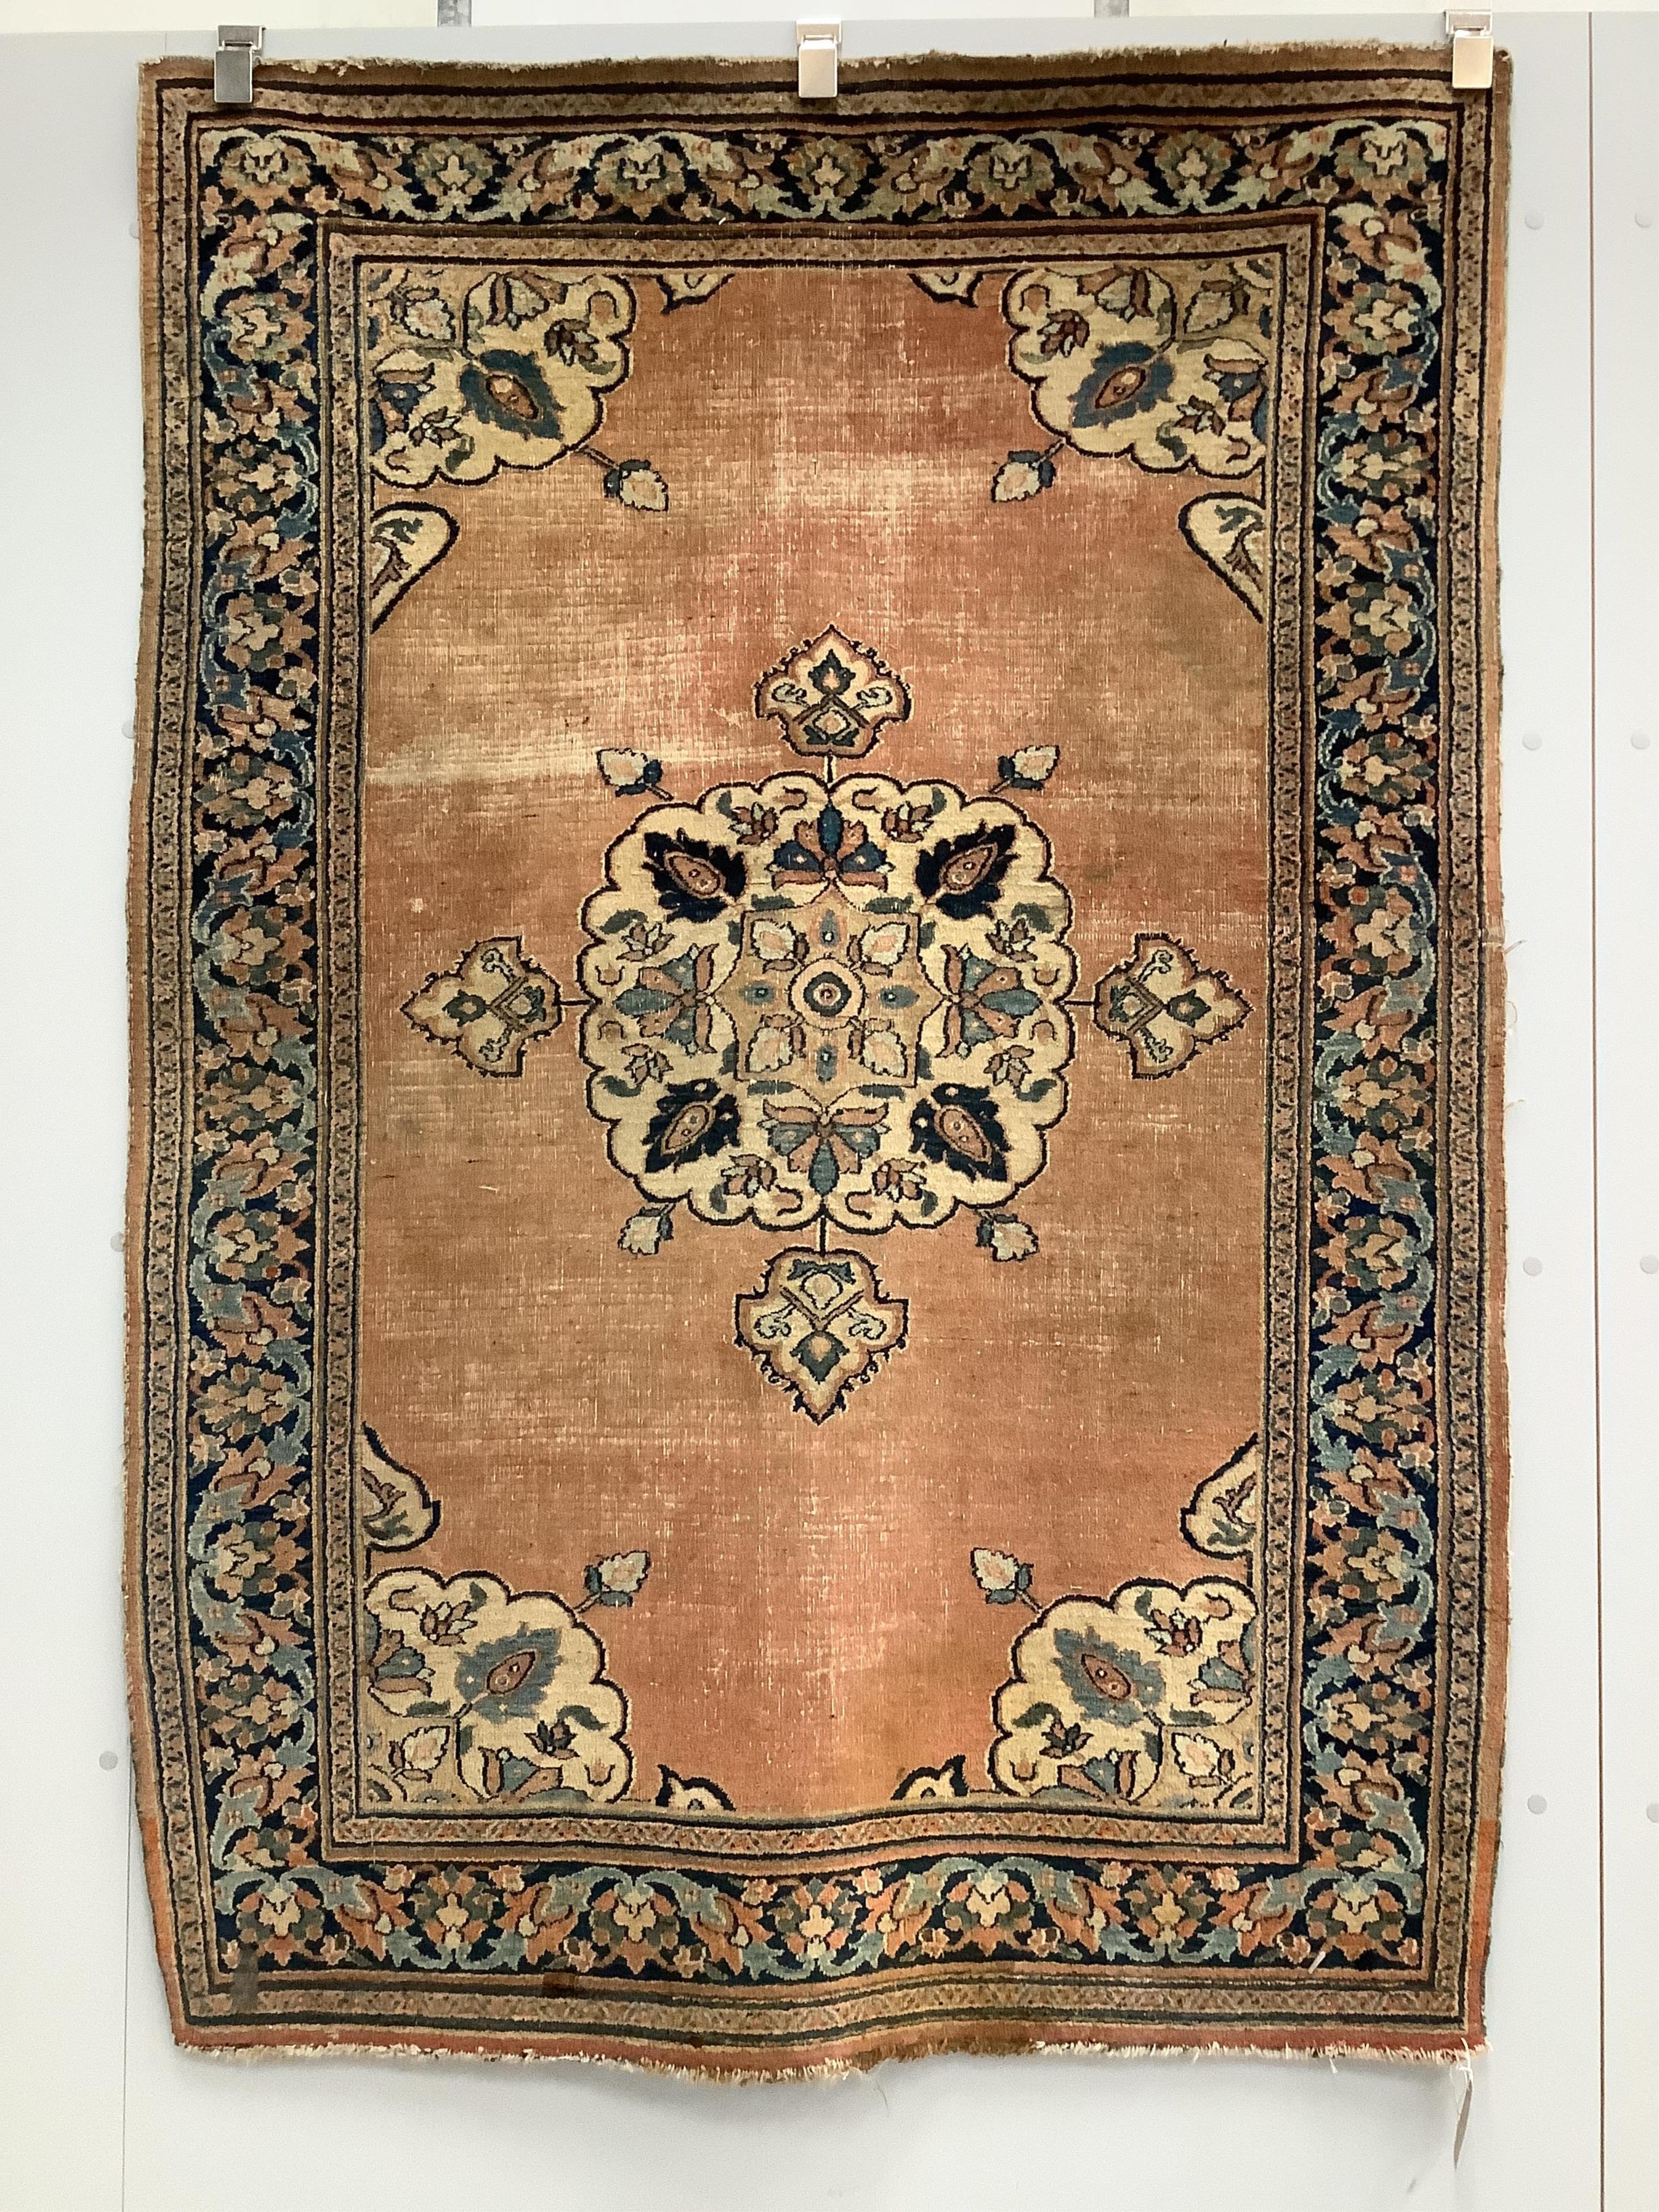 An antique Chinese rug, 160 x 120cm. Condition - fair